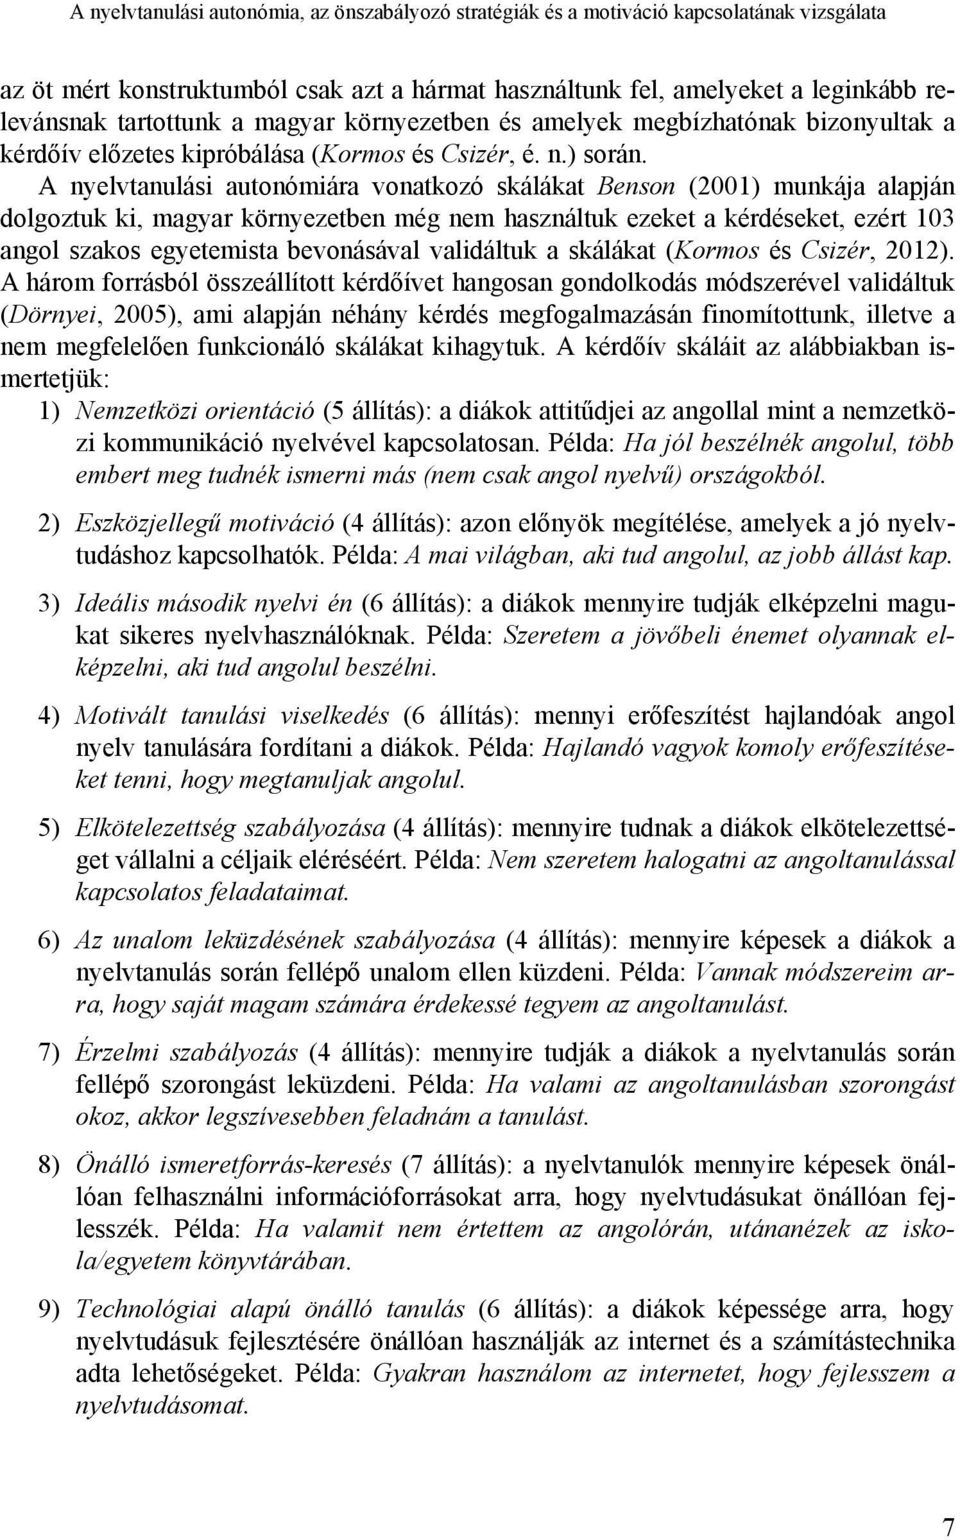 A nyelvtanulási autonómiára vonatkozó skálákat Benson (2001) munkája alapján dolgoztuk ki, magyar környezetben még nem használtuk ezeket a kérdéseket, ezért 103 angol szakos egyetemista bevonásával